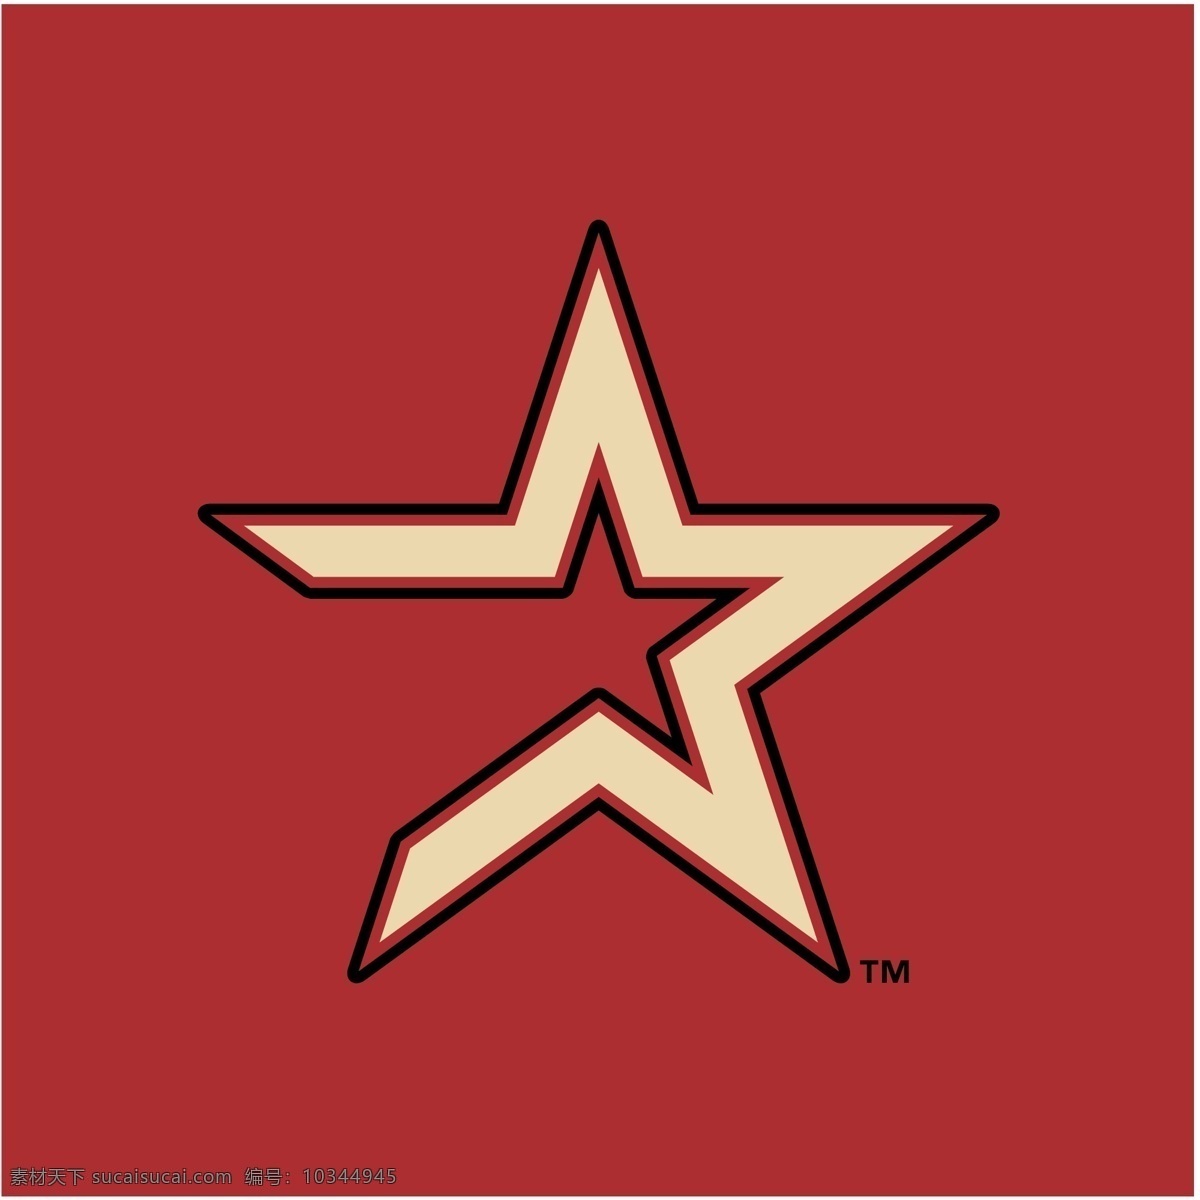 休斯敦 太空人 队 矢量标志下载 免费矢量标识 商标 品牌标识 标识 矢量 免费 品牌 公司 粉色